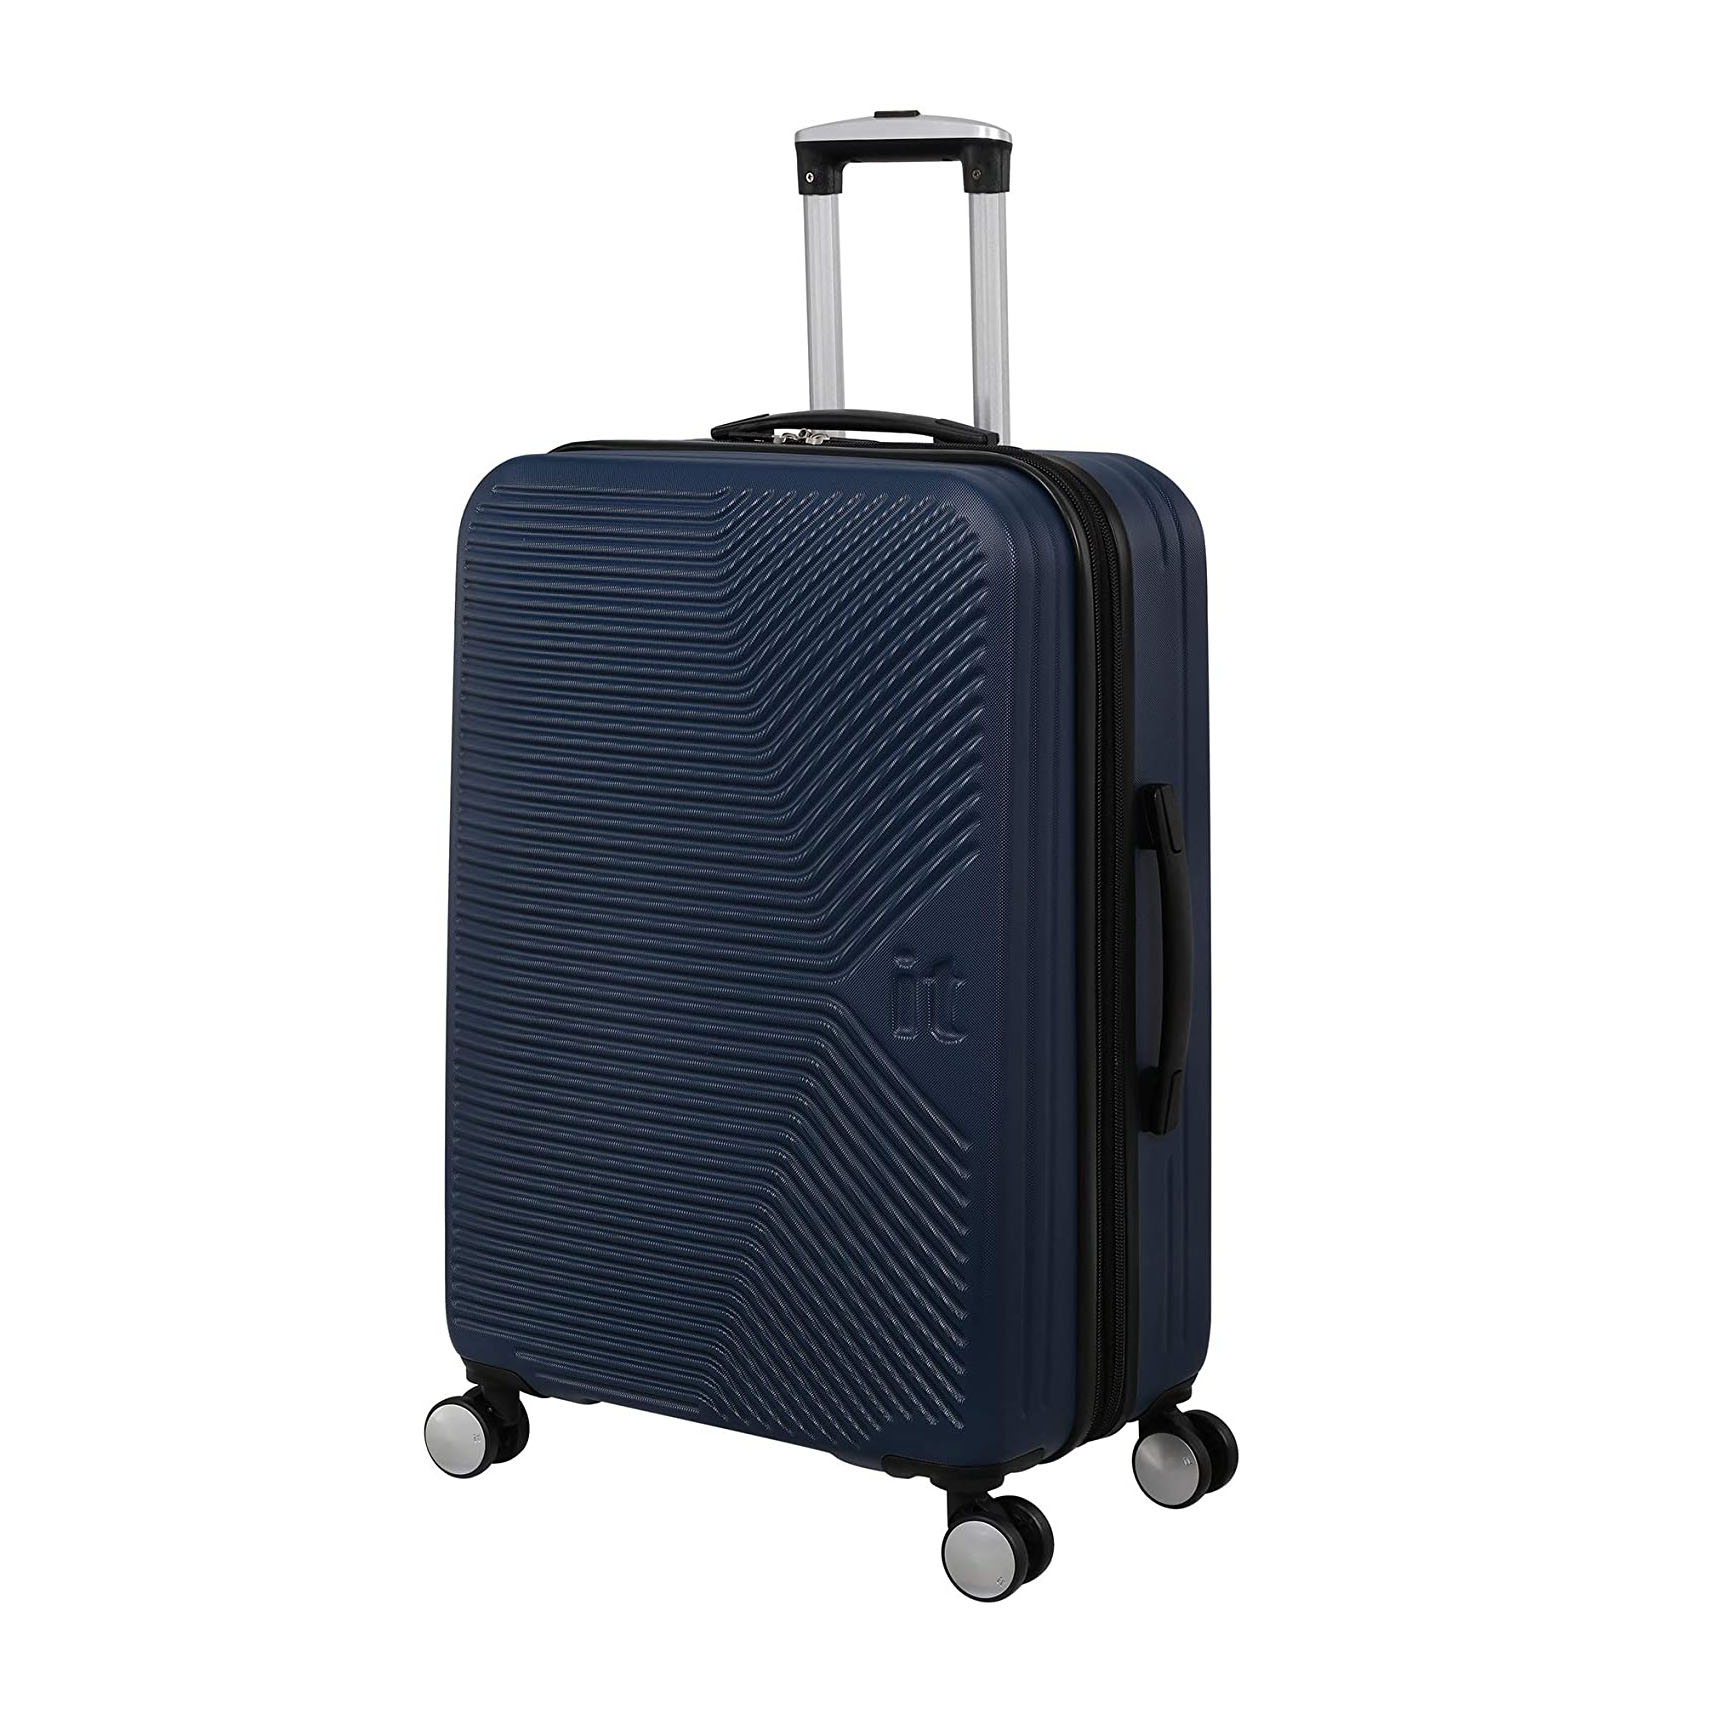 چمدان ای تی مدل aligned poseidon سایز متوسط